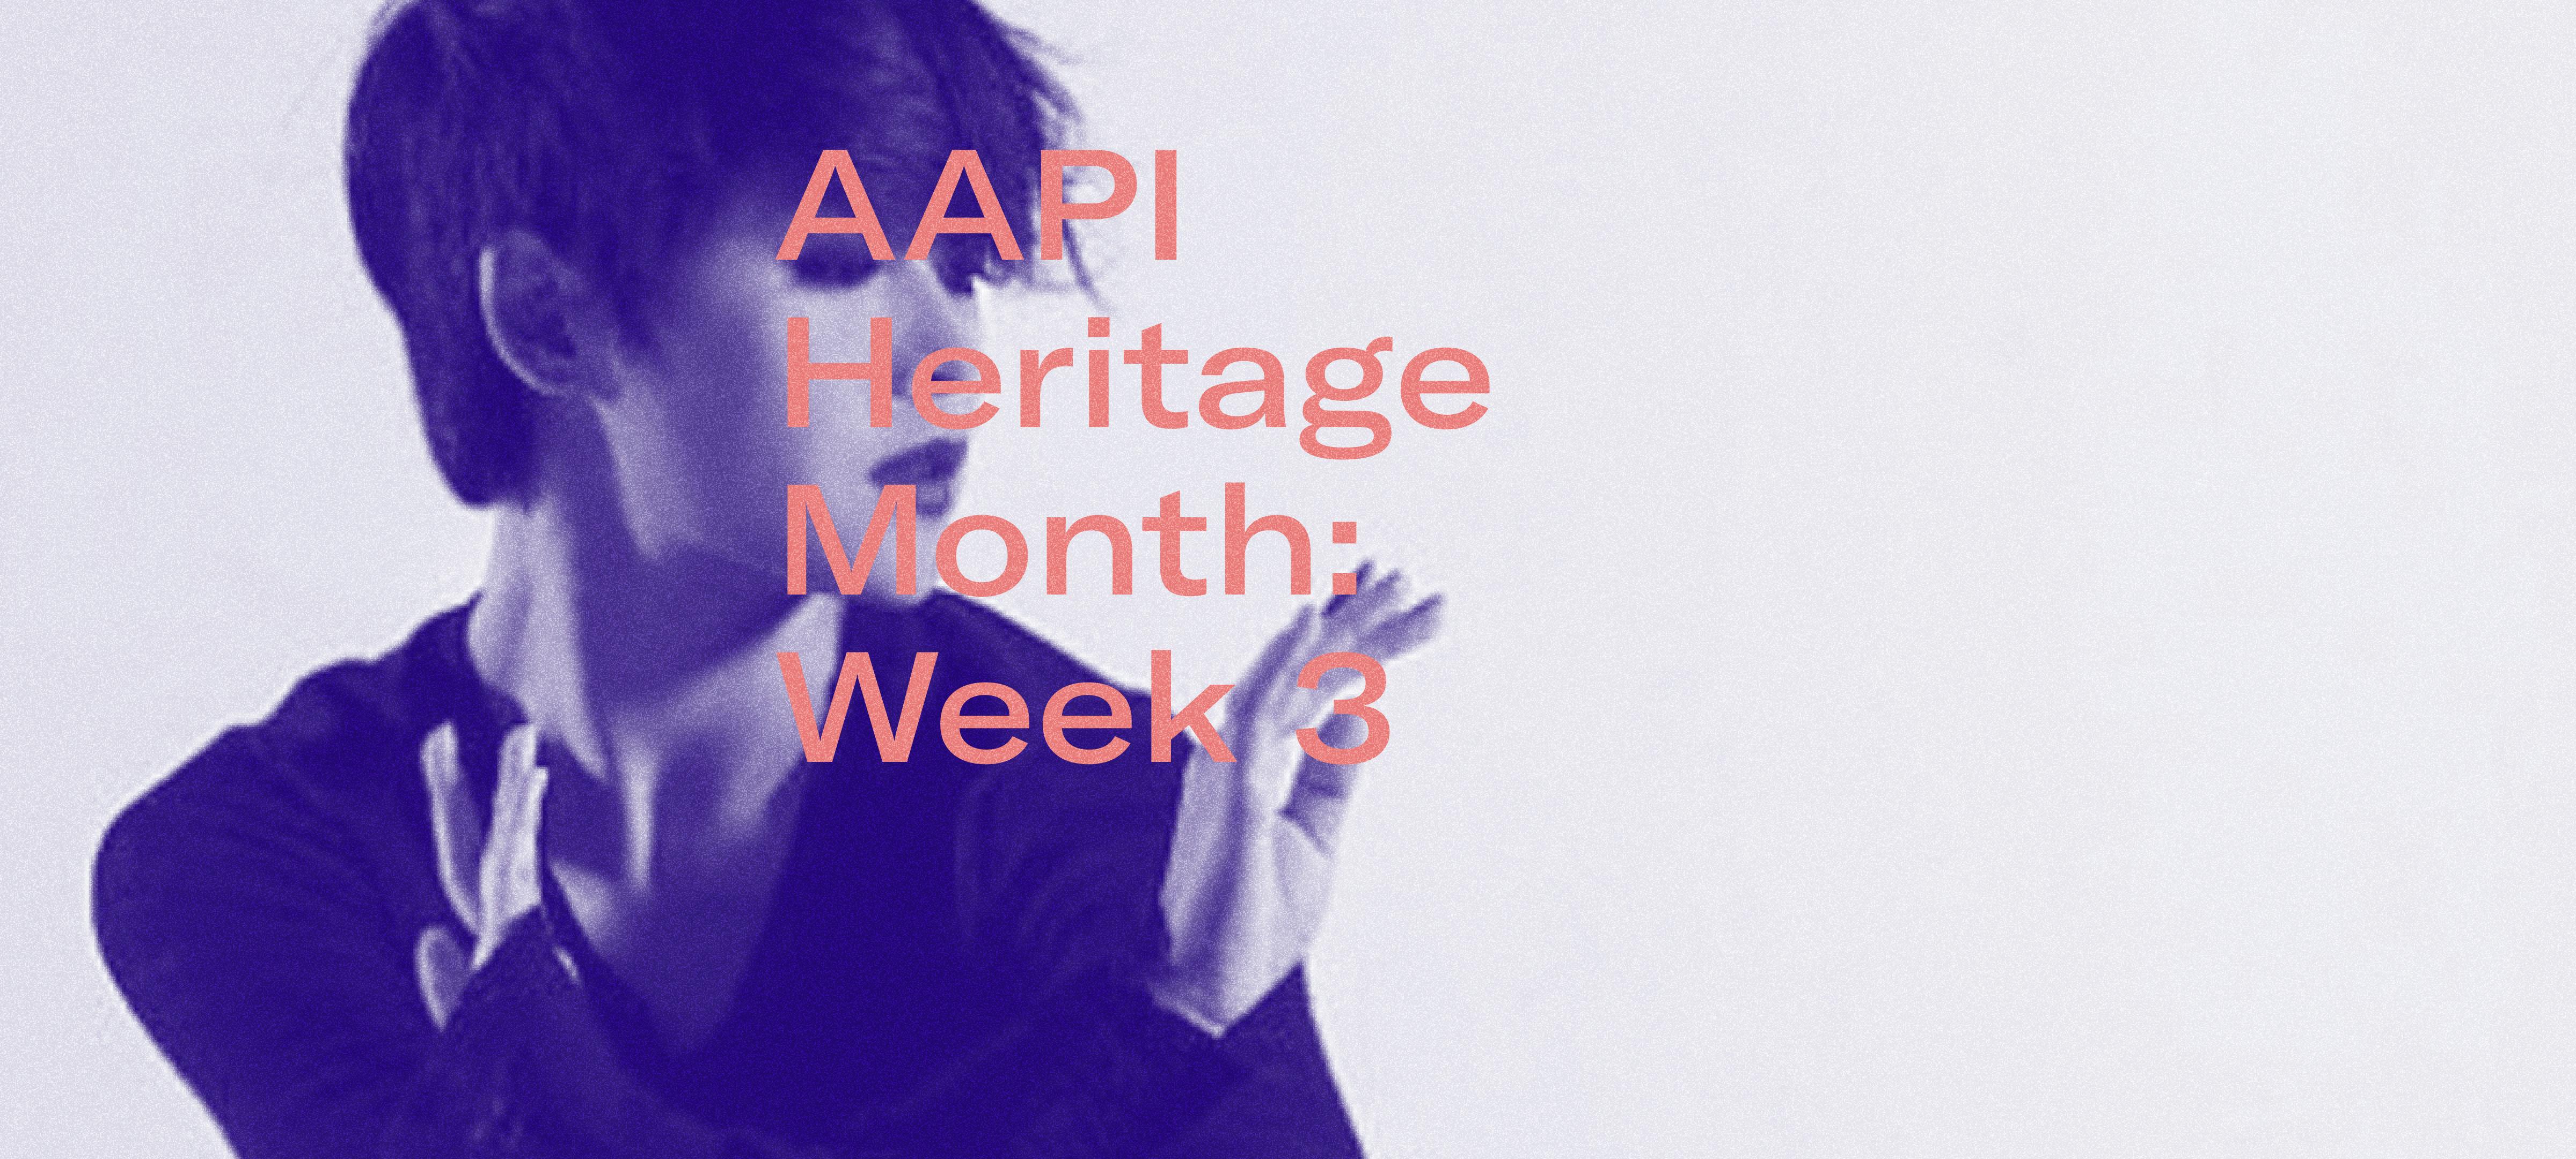 AAPI Heritage Month: Week 3